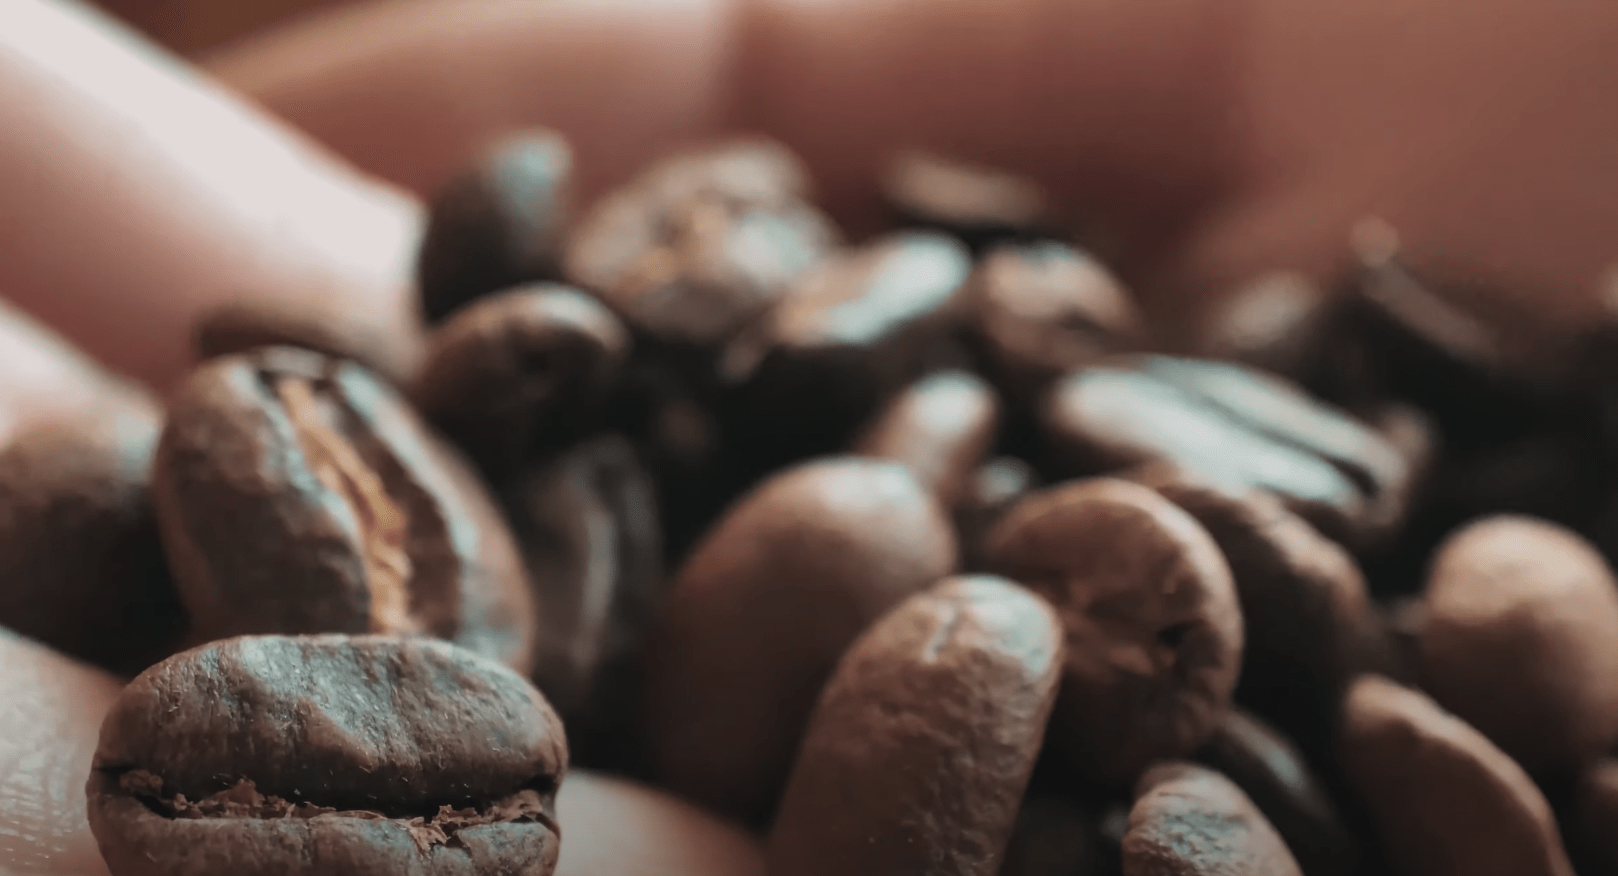 Recyclage des capsules de café jetables : mythe ou réalité ?